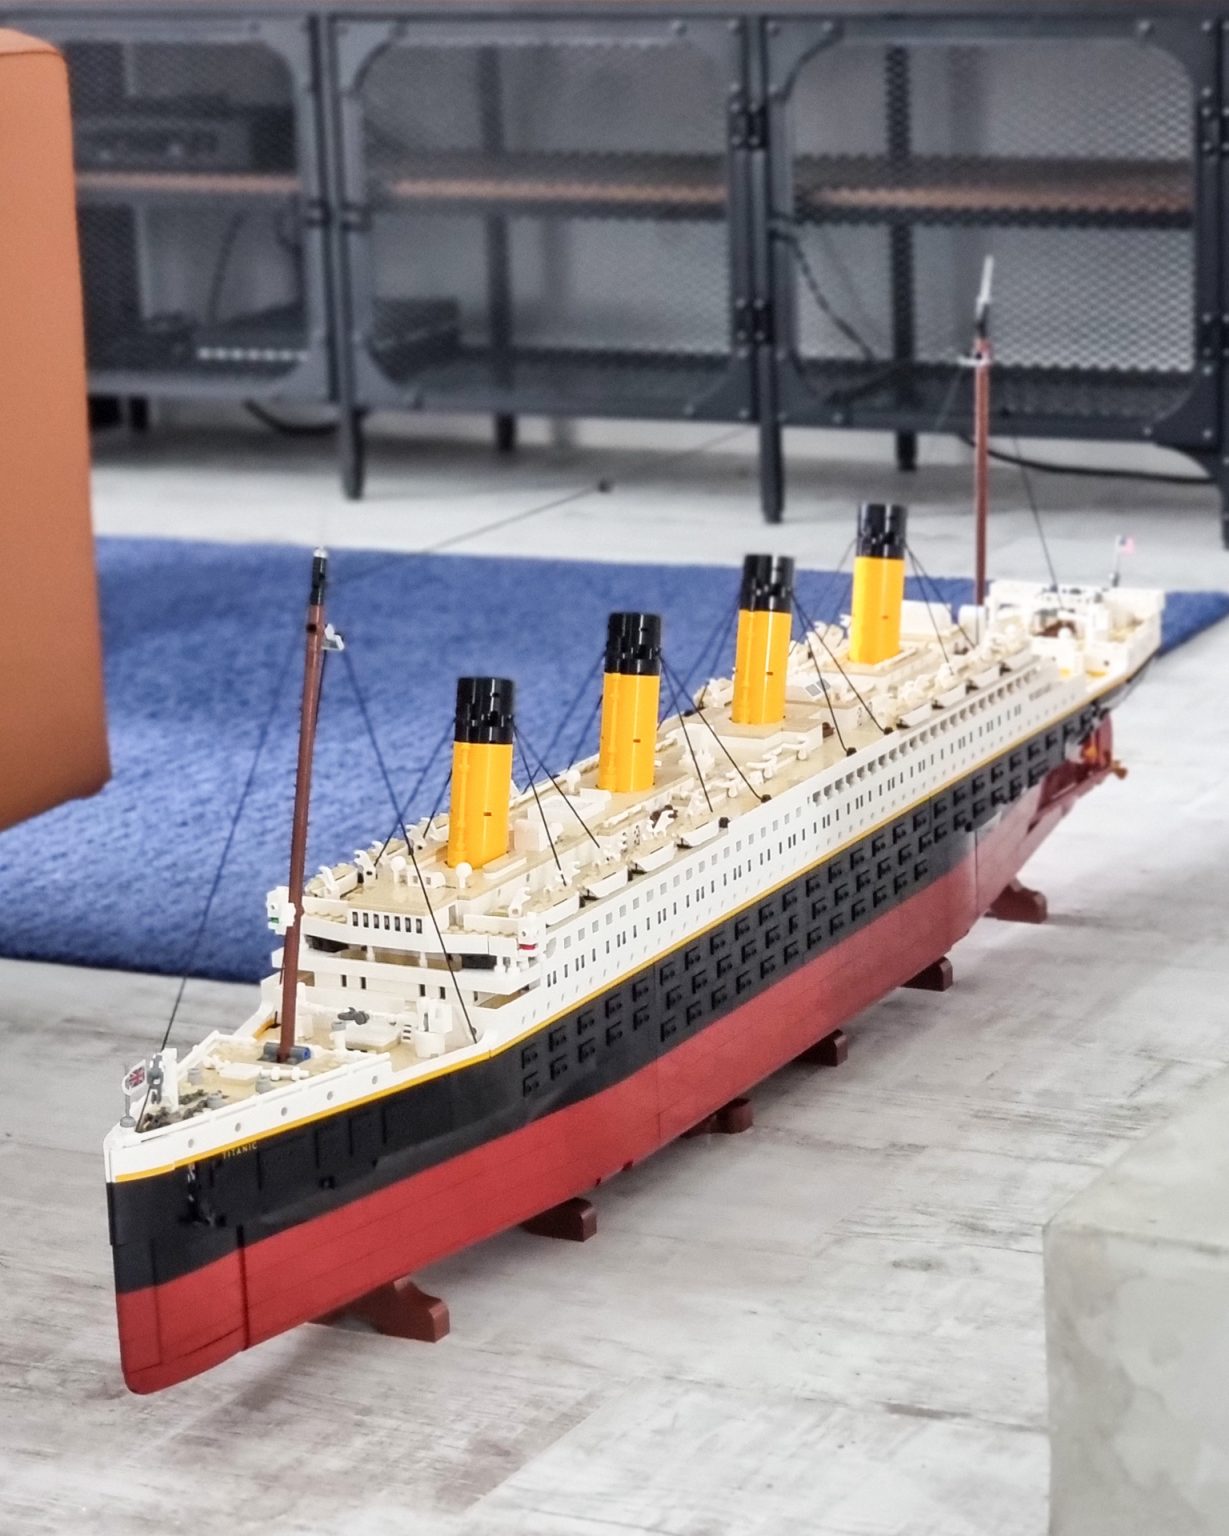 Poskladali sme obrovský Titanic z kociek LEGO, stojí za 629,99 €?